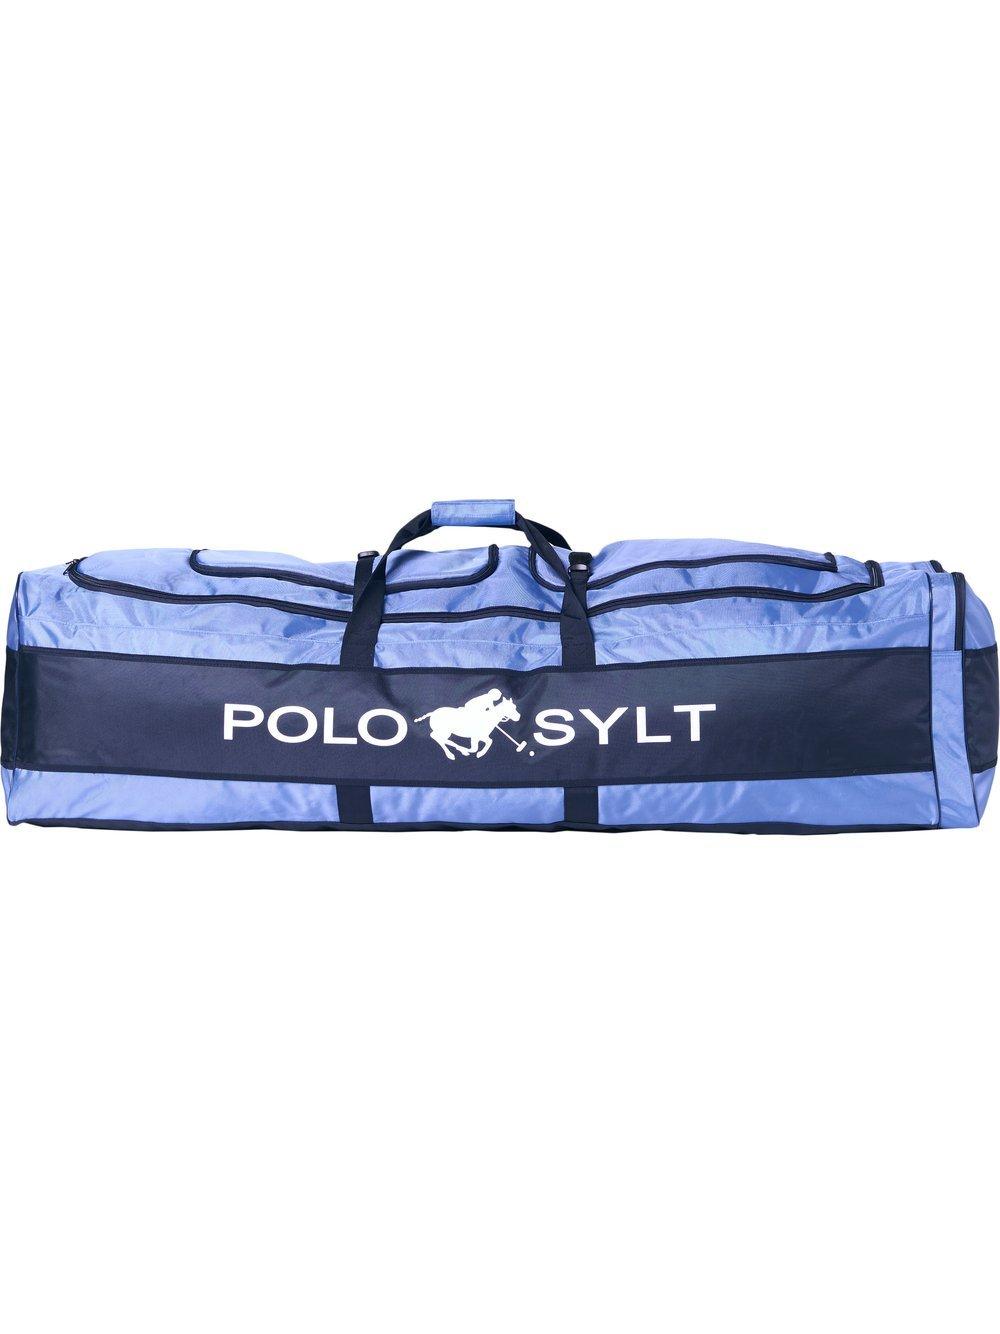 Polo Sylt Schlägertasche Damen bedruckt, blau von POLO SYLT